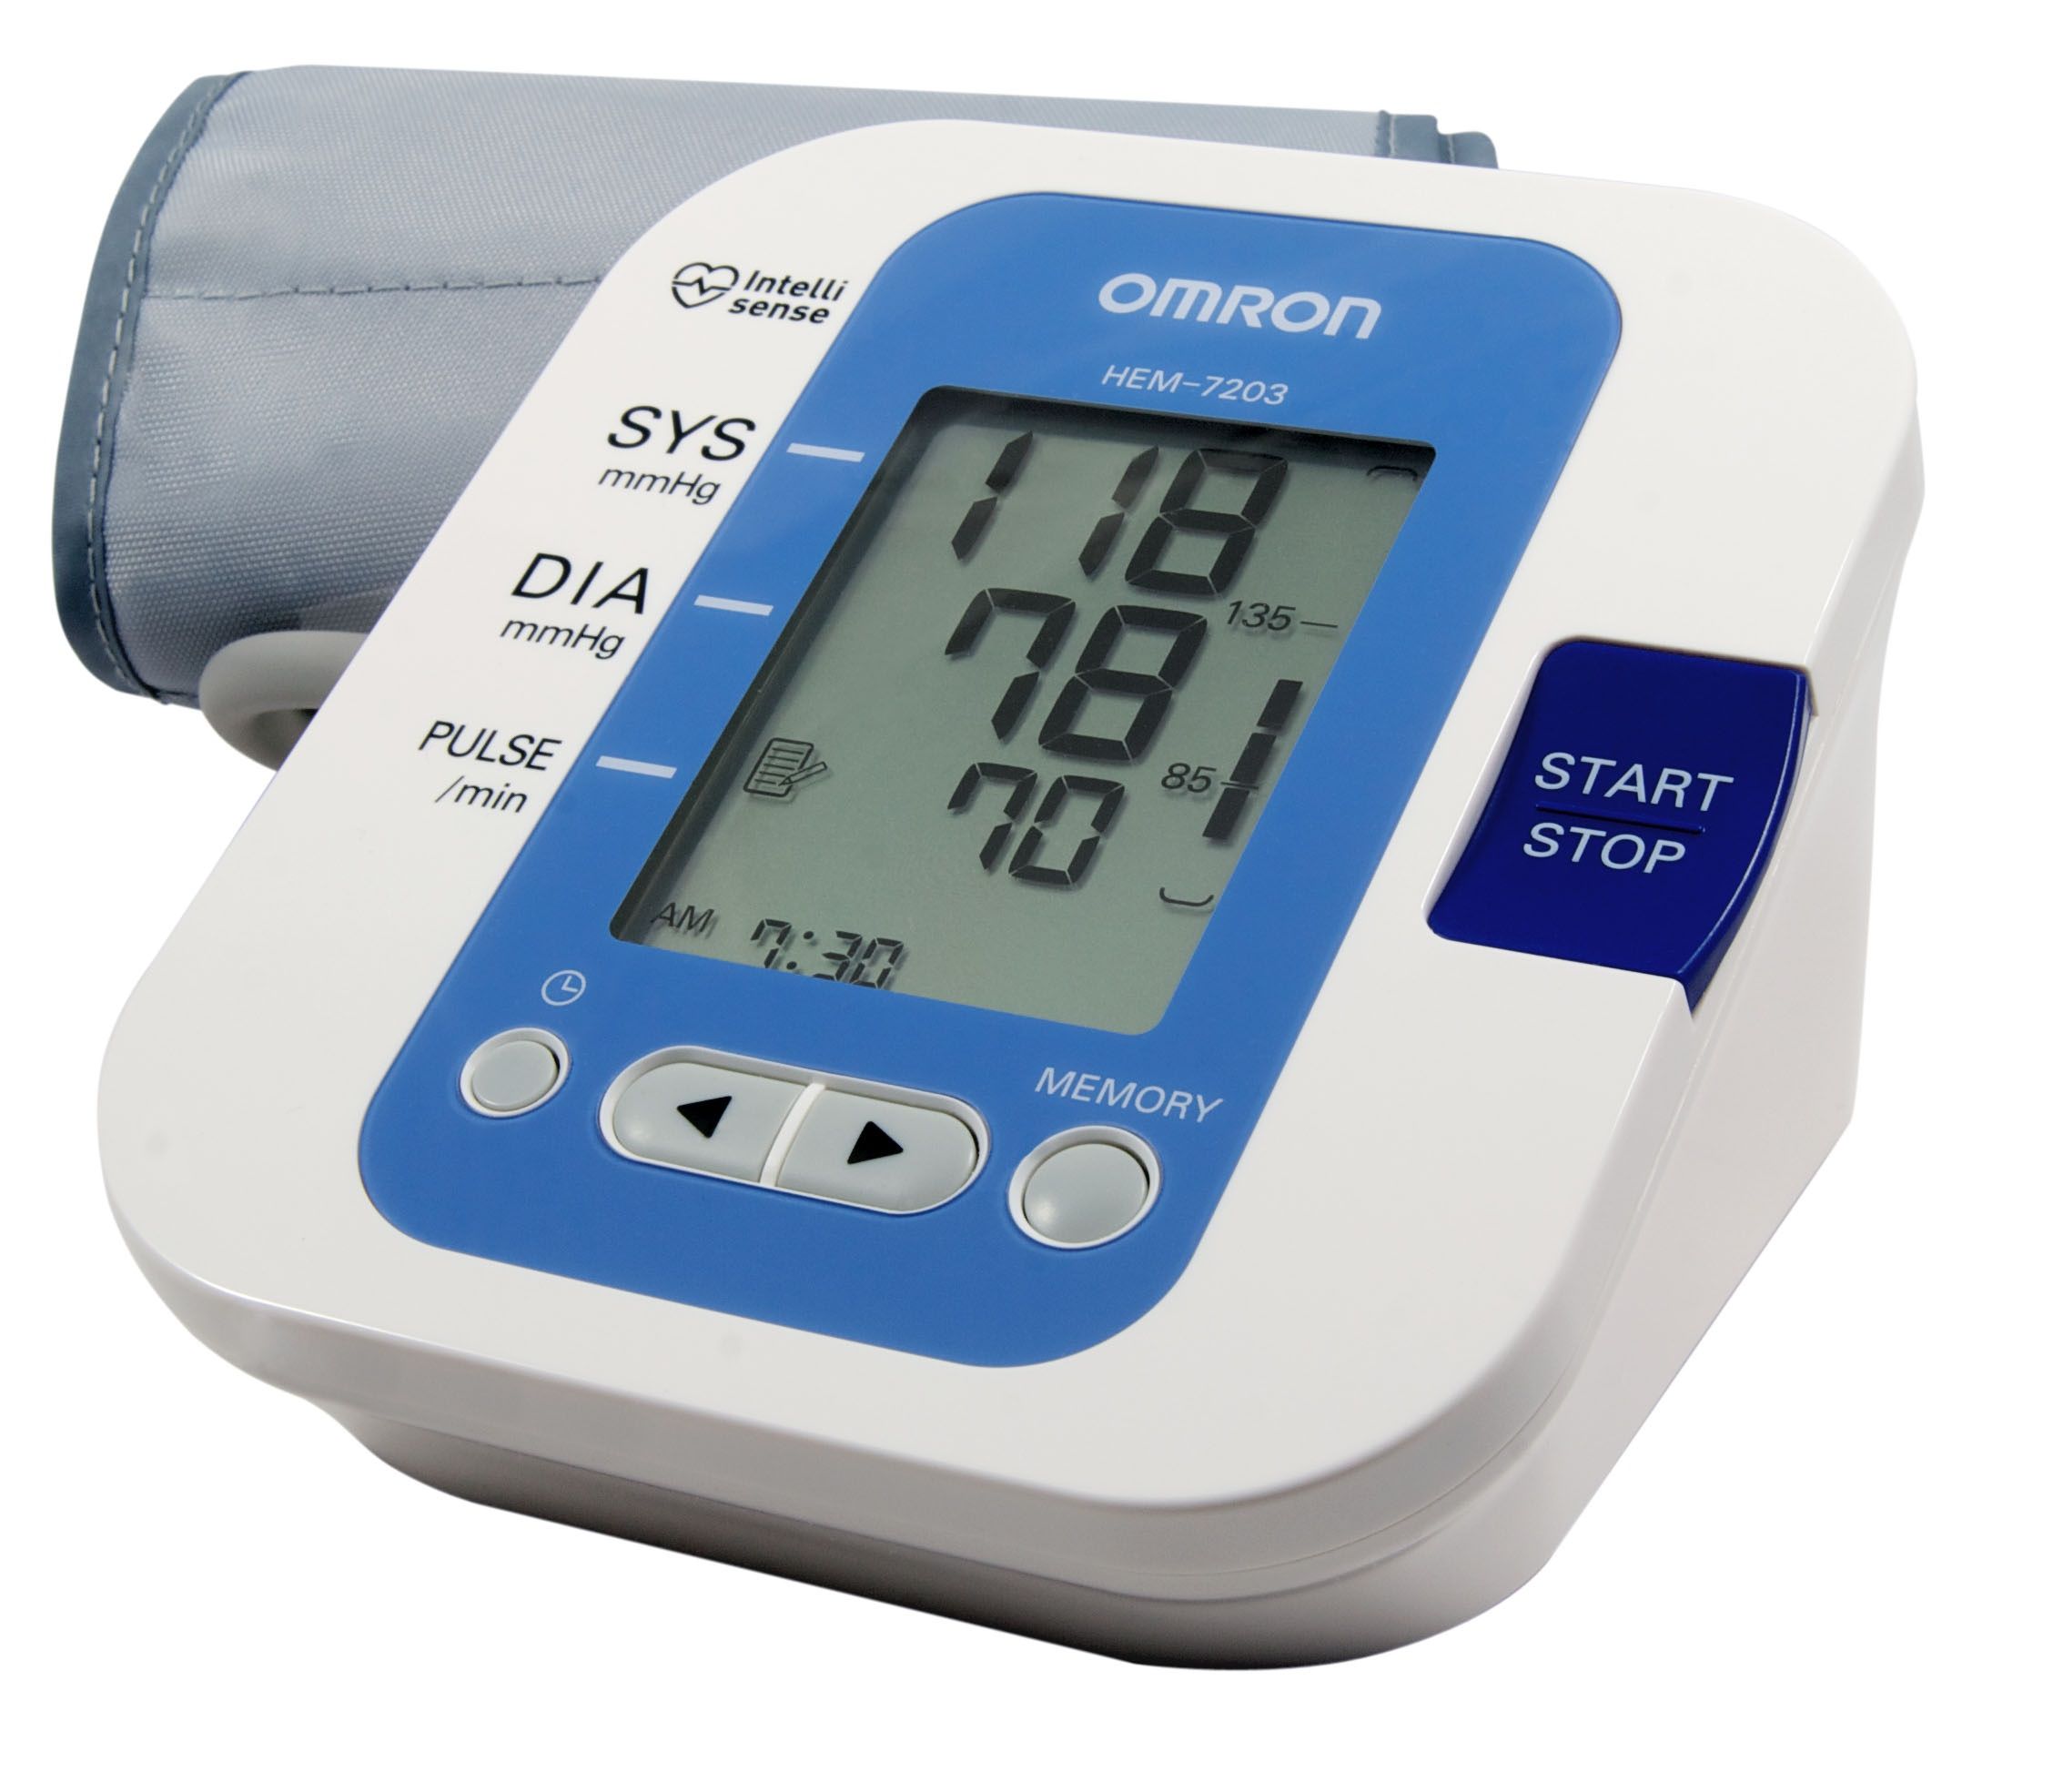 Sử dụng máy đo đường huyết tại nhà tùy vào tình trạng của mỗi bệnh nhân mà bác sỹ có những hướng dẫn cụ thể